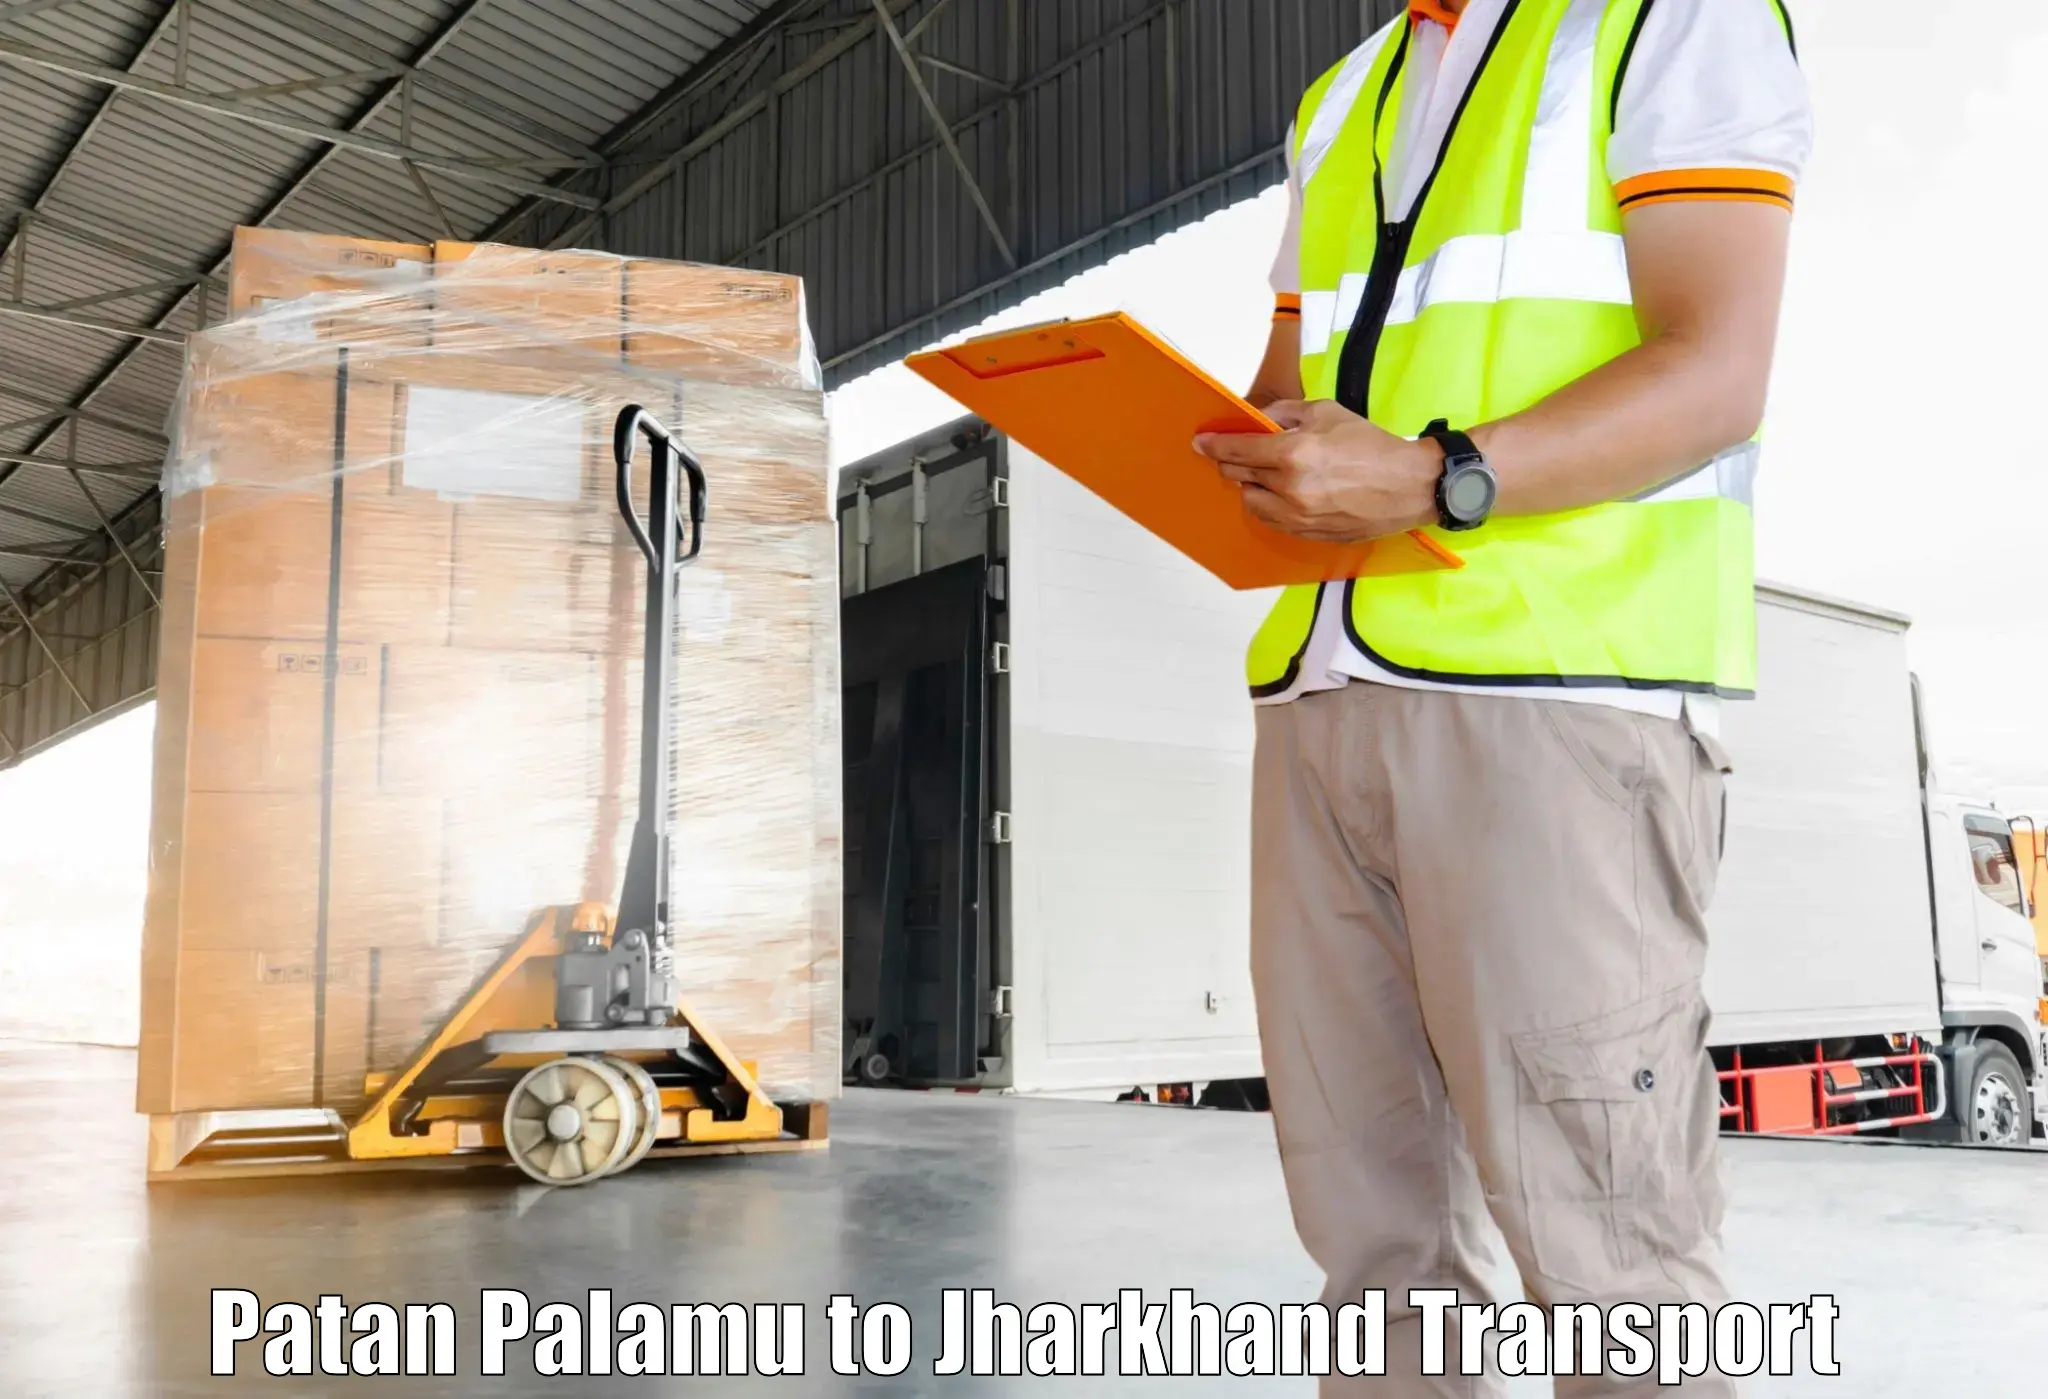 Online transport booking Patan Palamu to Seraikela Kharsawan